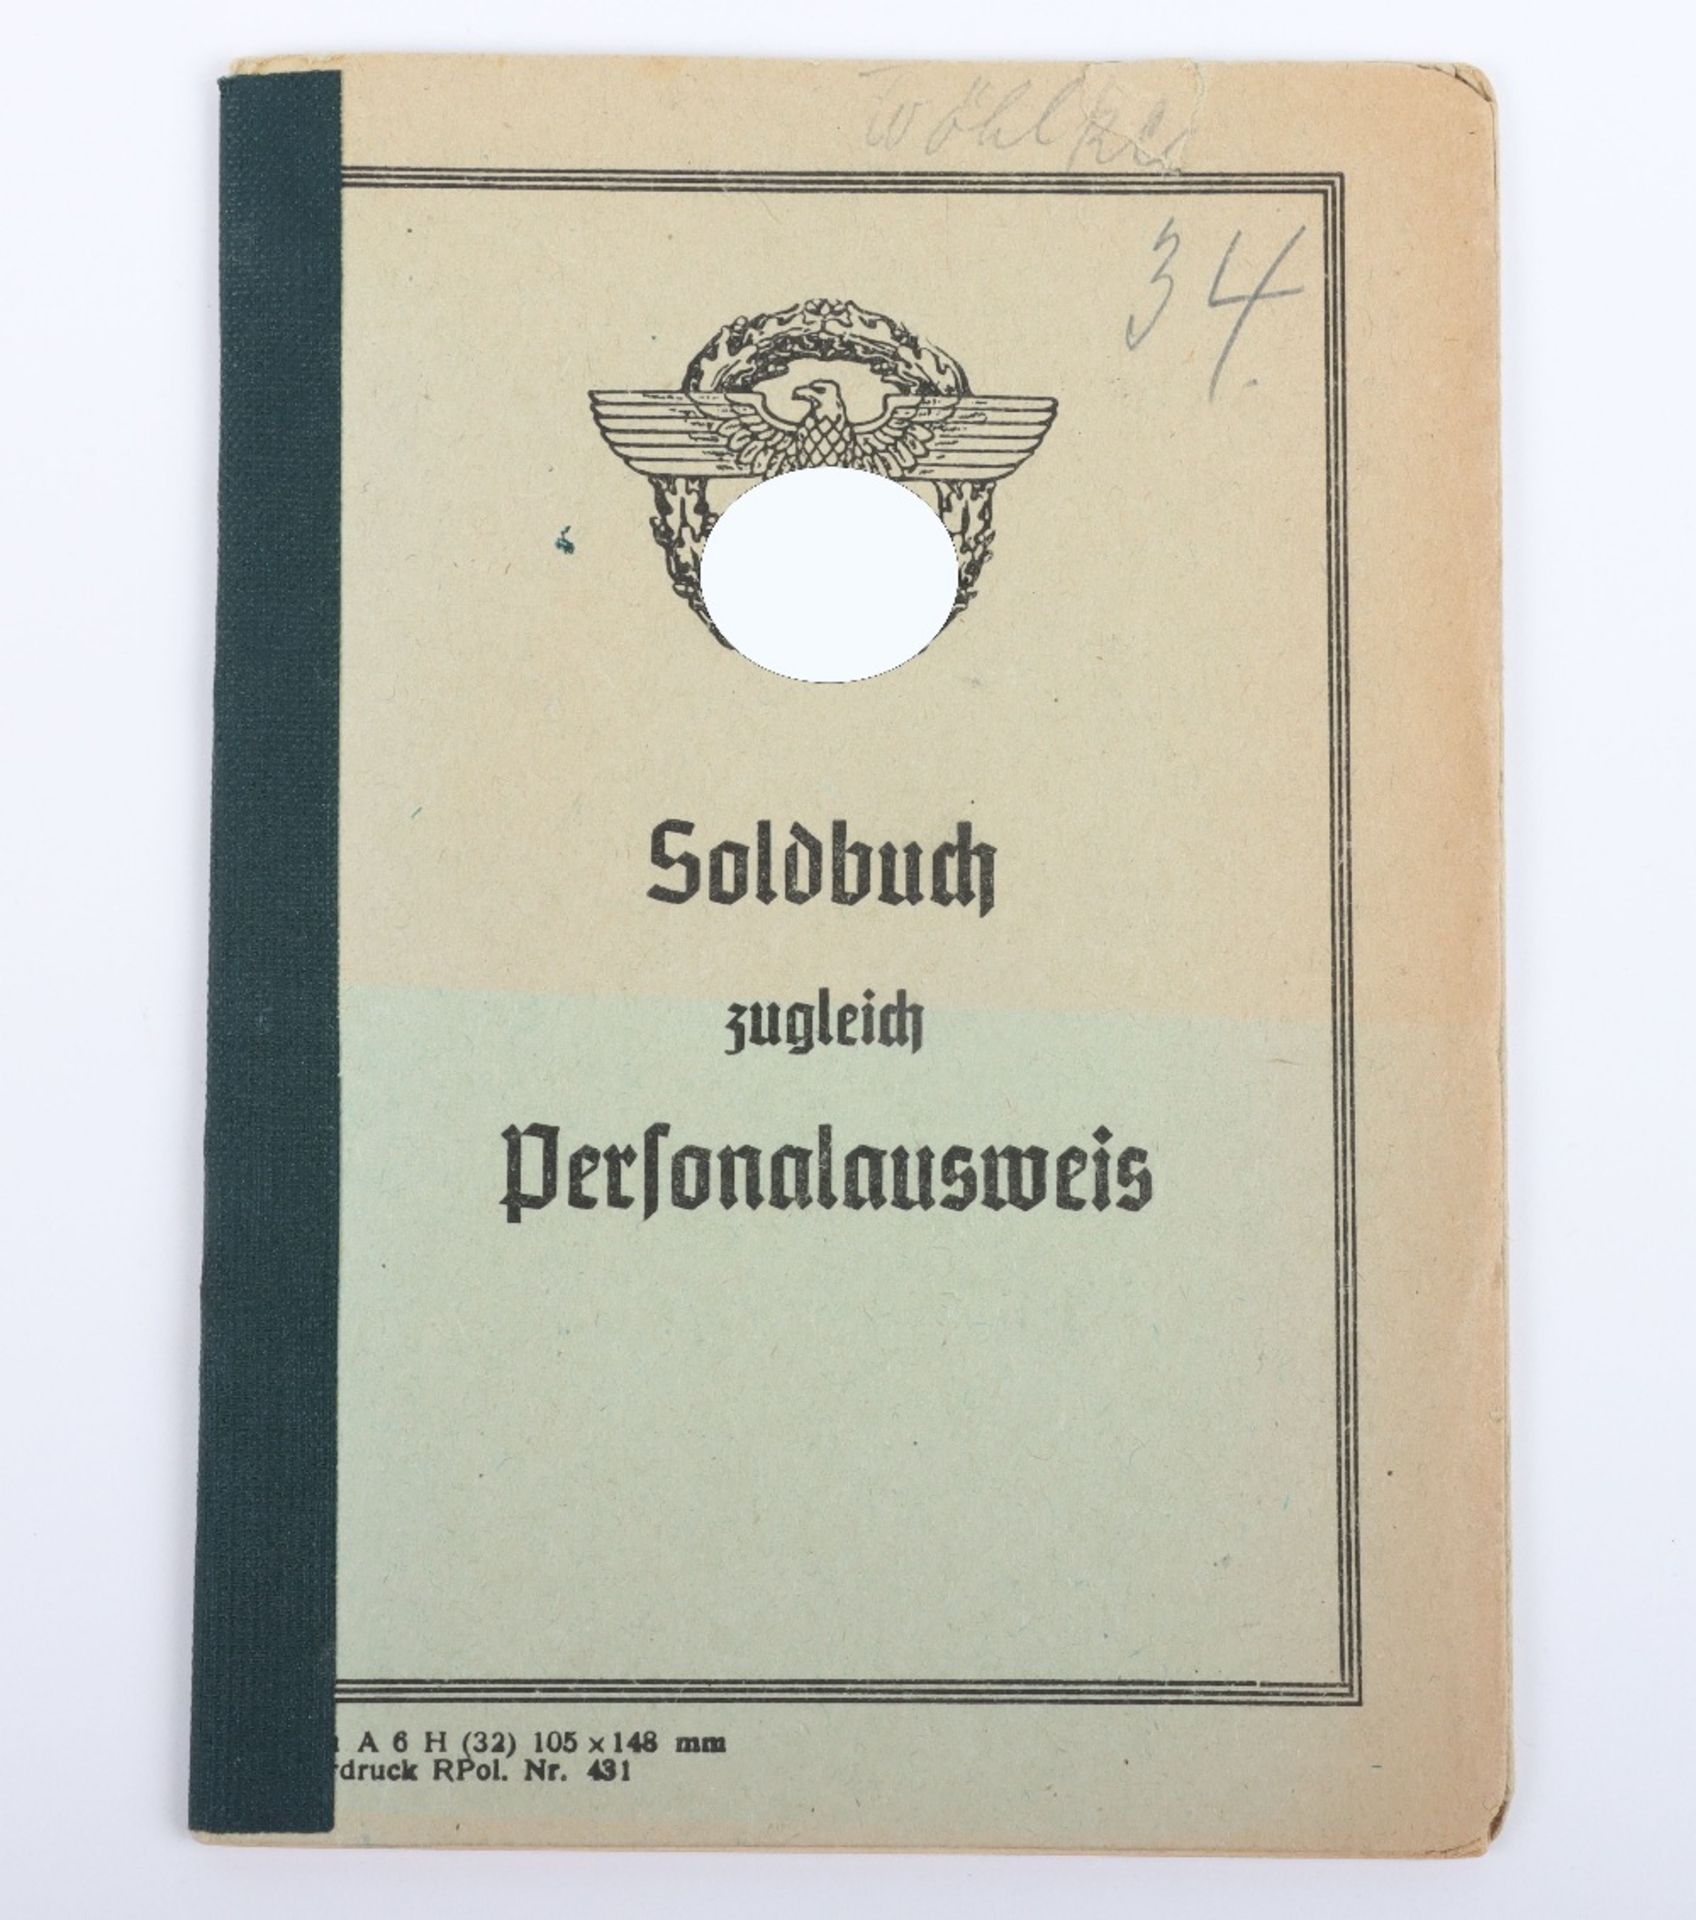 WW2 German Police Soldbuch / ID book to W. Wöhlke, late 1944 issue, Hamburg